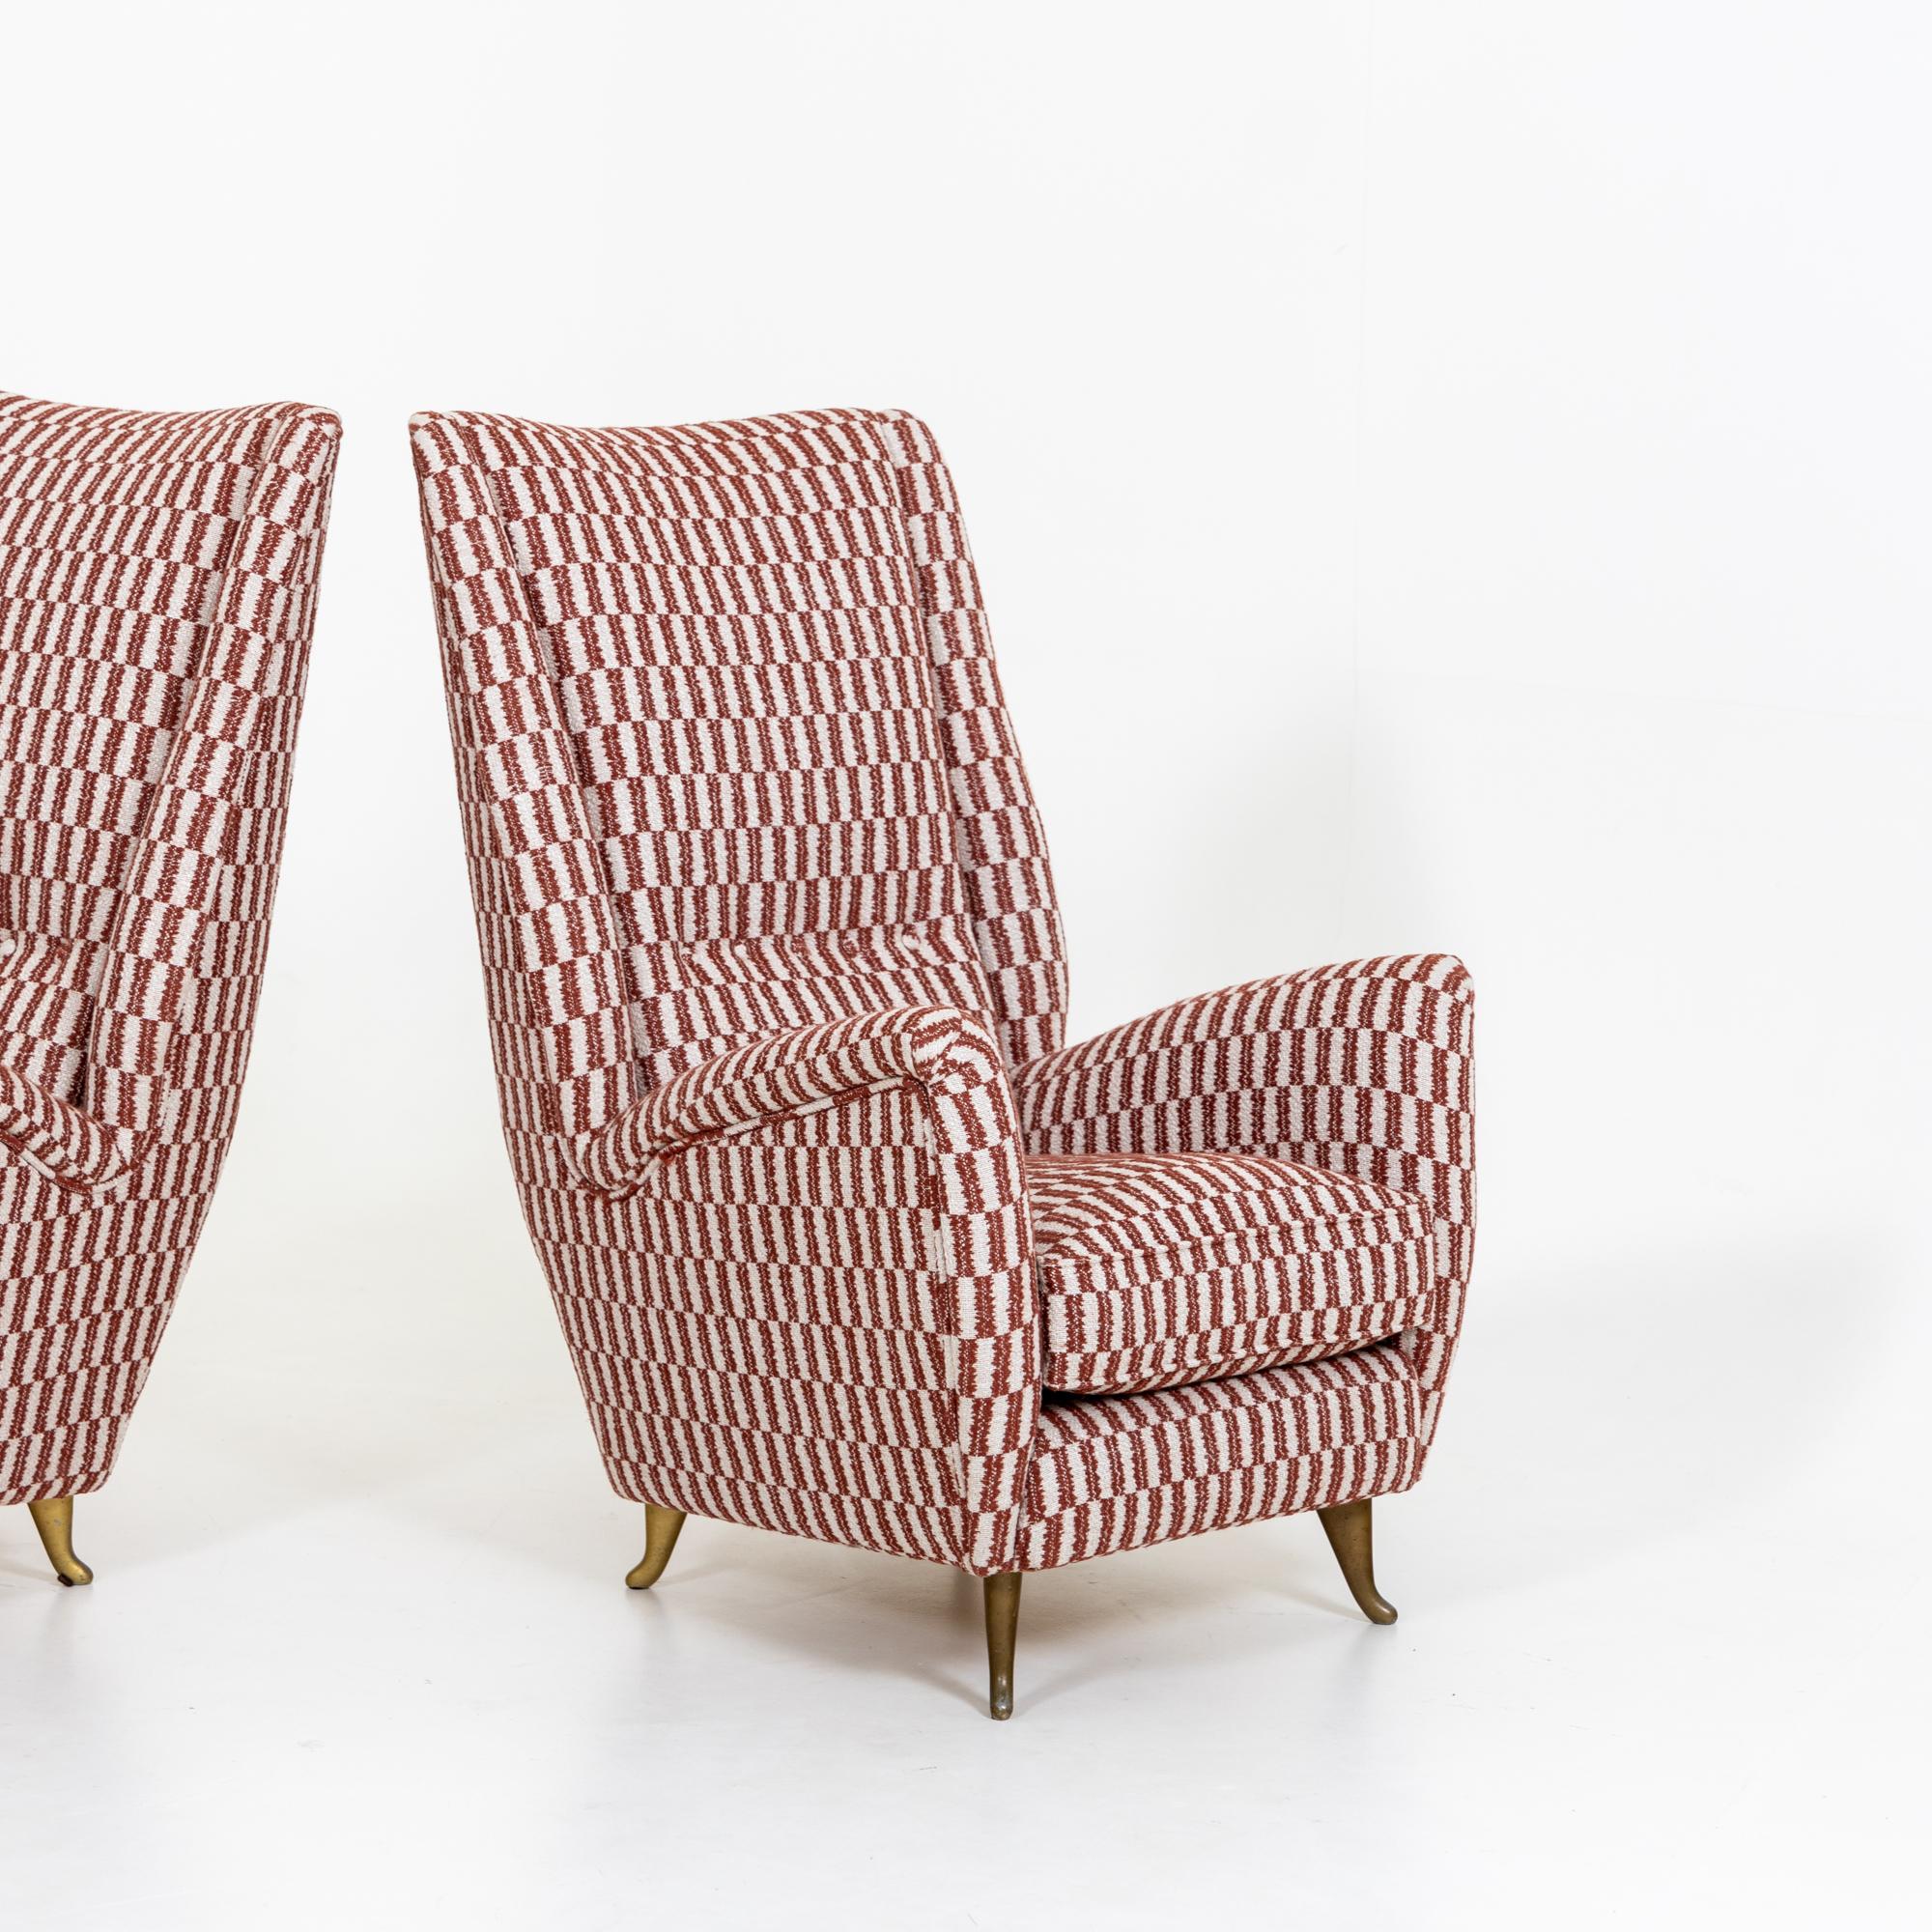 Paire de chaises longues à haut dossier conçues par Gio Ponti et produites par ISA Bergamo.
Cette paire de chaises nouvellement tapissées est soutenue par quatre pieds courbés en laiton massif.


